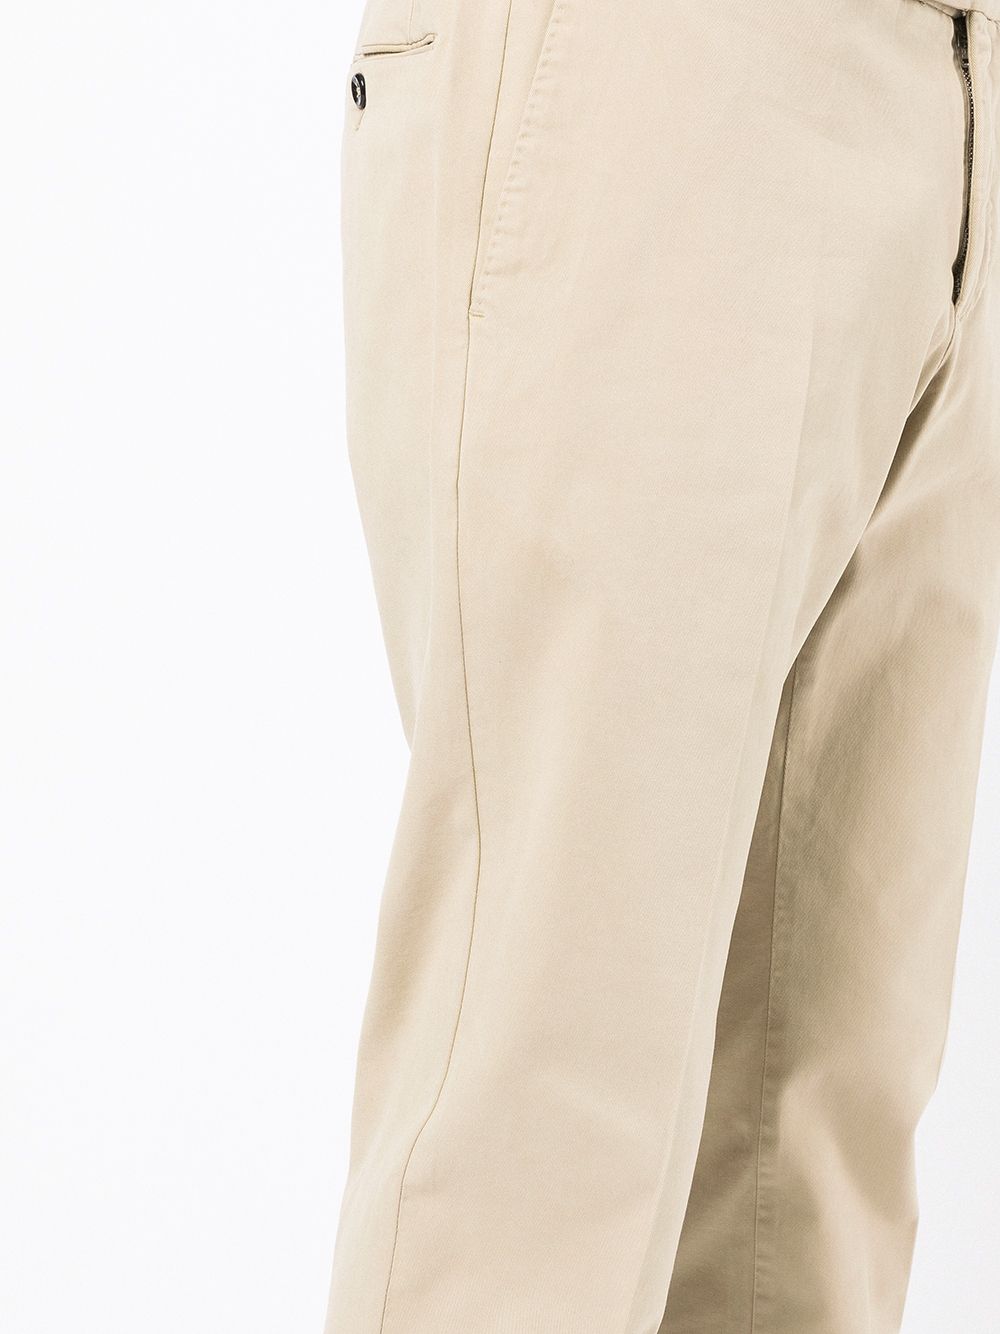 фото Pt01 брюки со смещенной застежкой на пуговицу